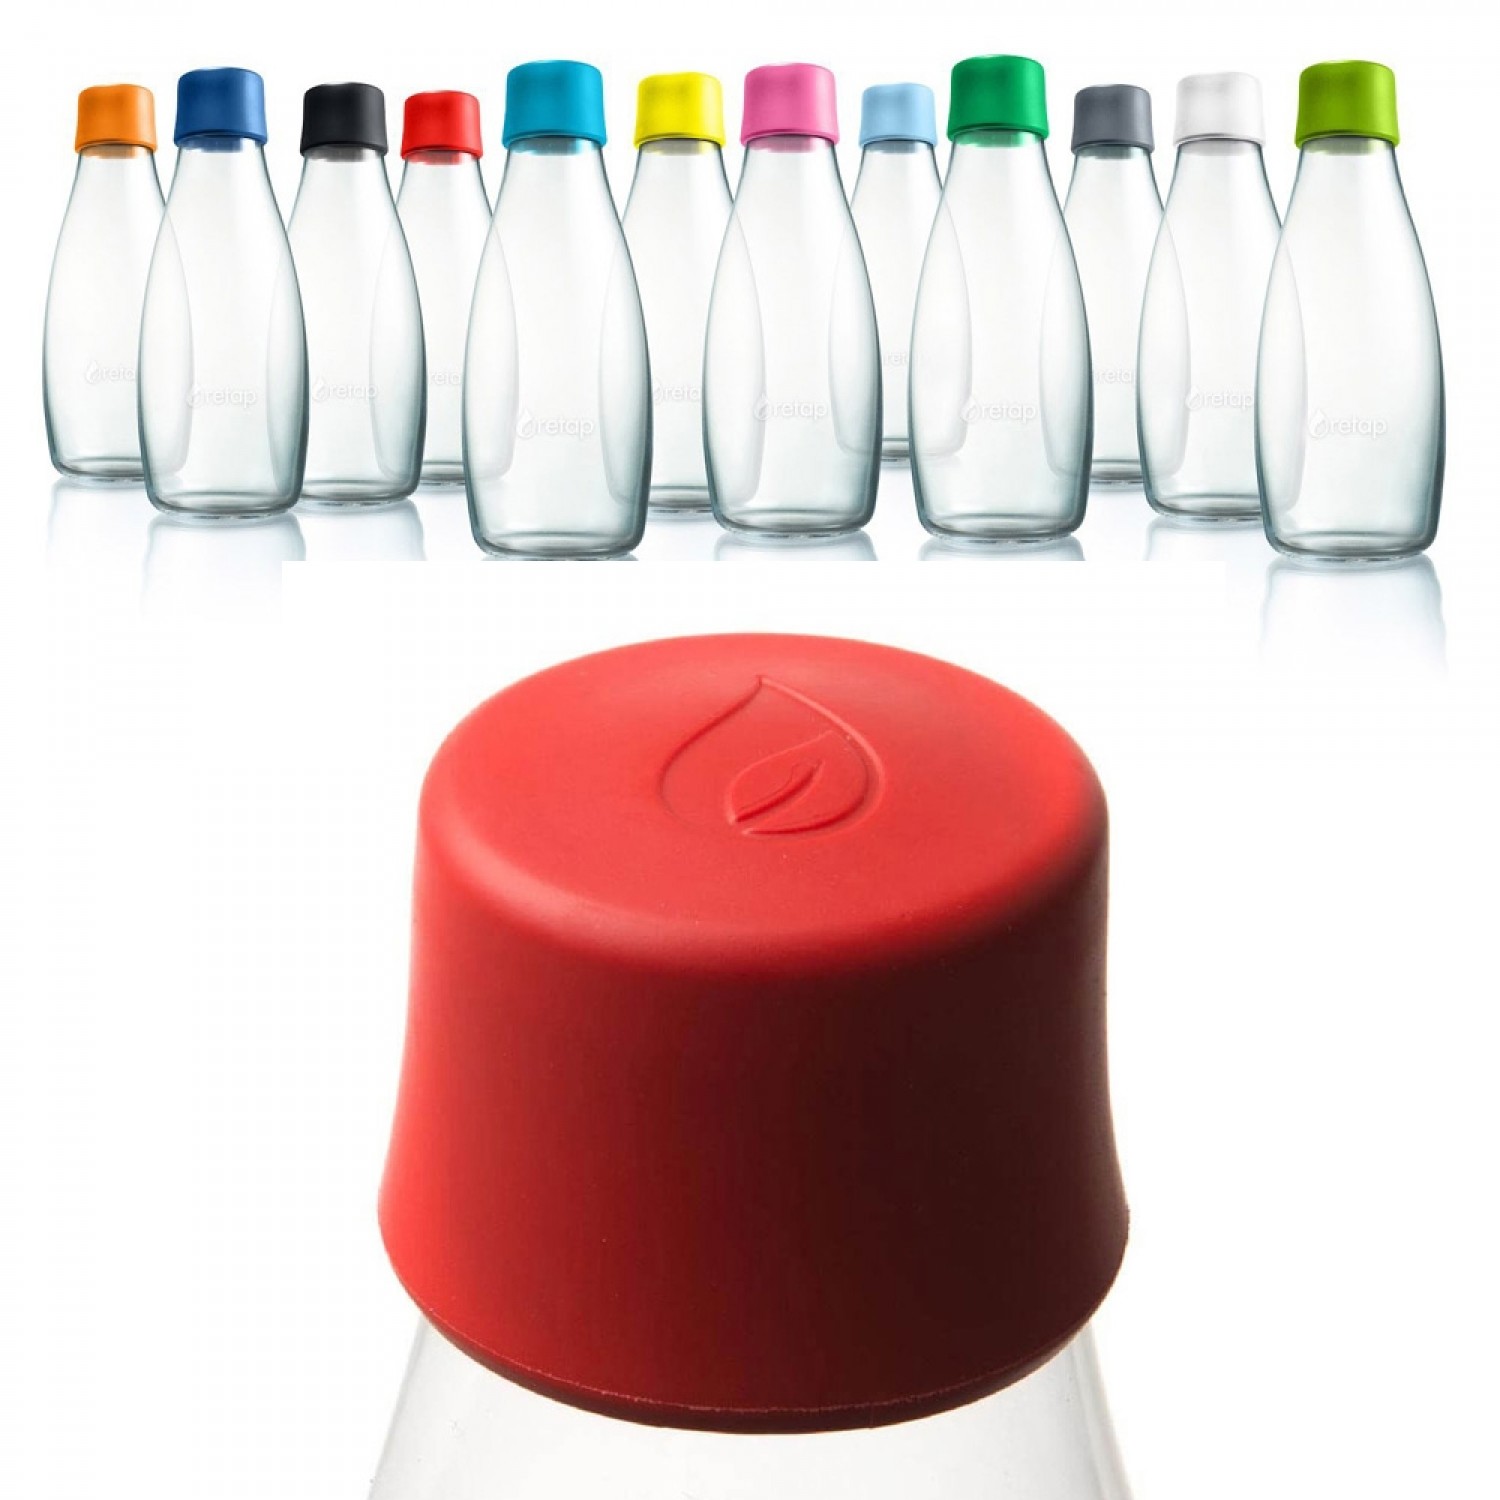 Deckel für Retap Trinkflaschen - viele Farben